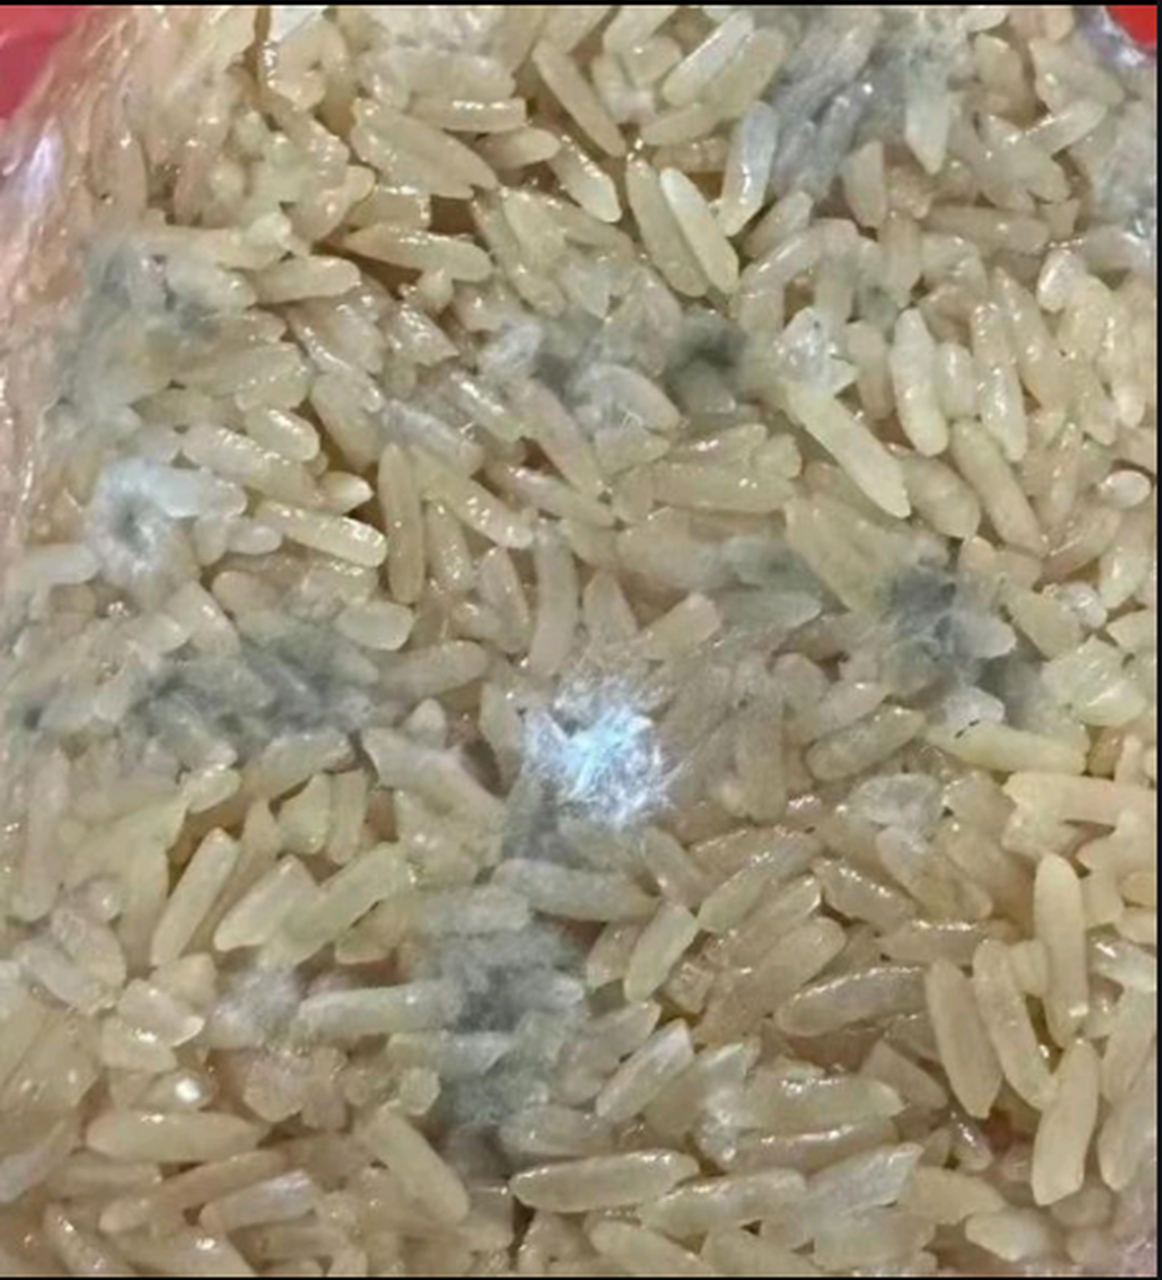 变质的米饭图片